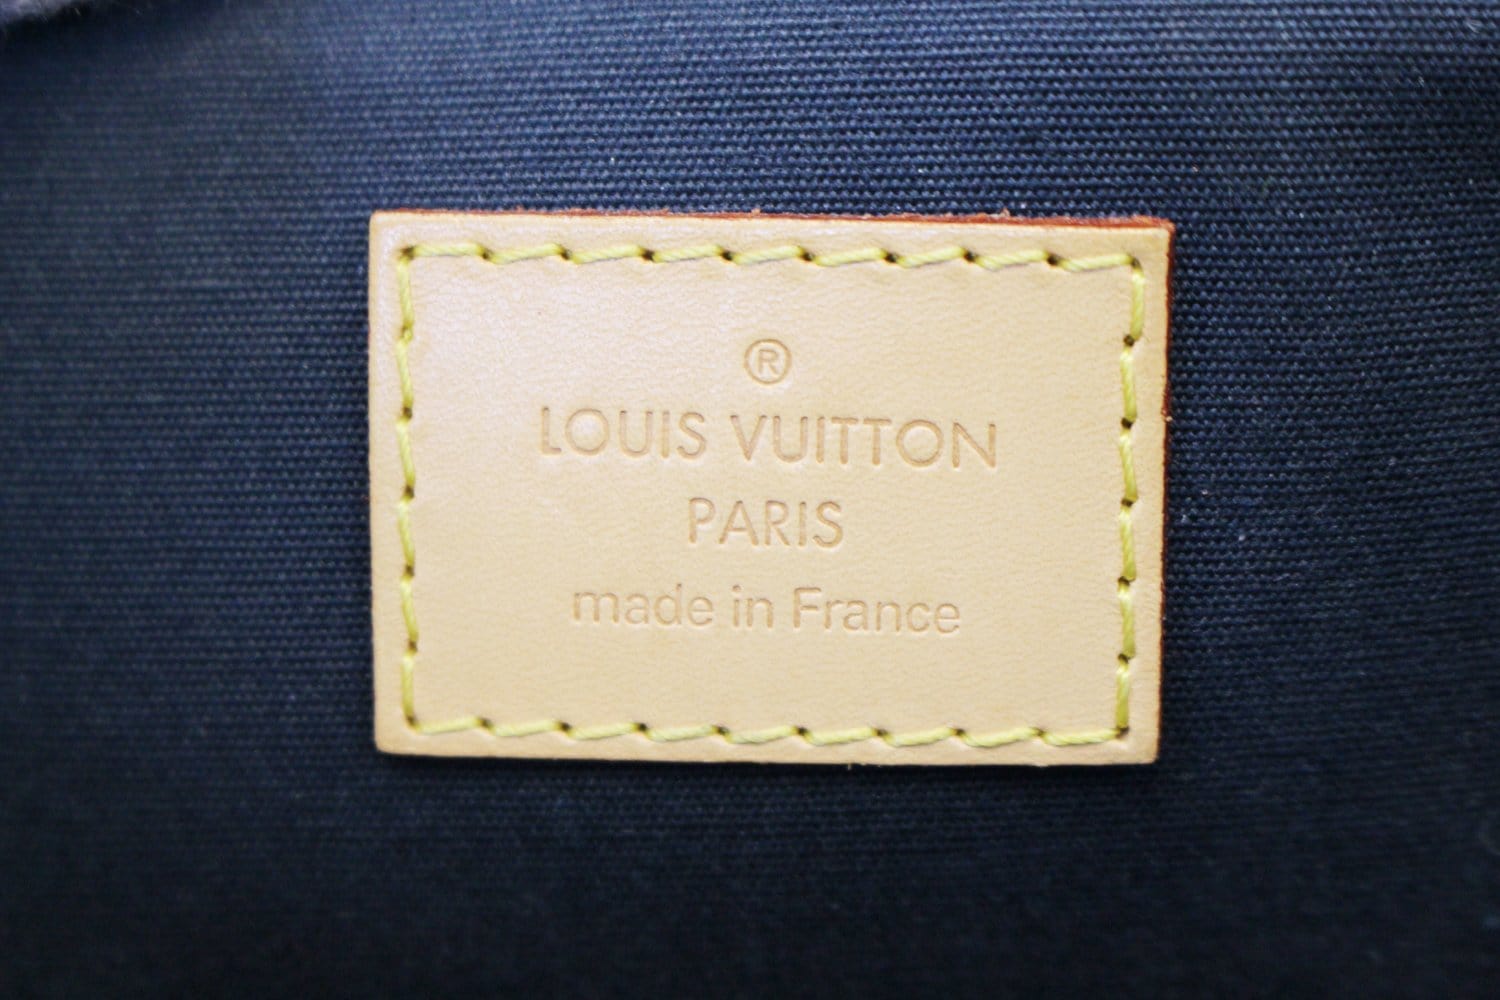 Louis Vuitton Bellevue PM Blue Patent Leather Handbag (Pre-Owned)